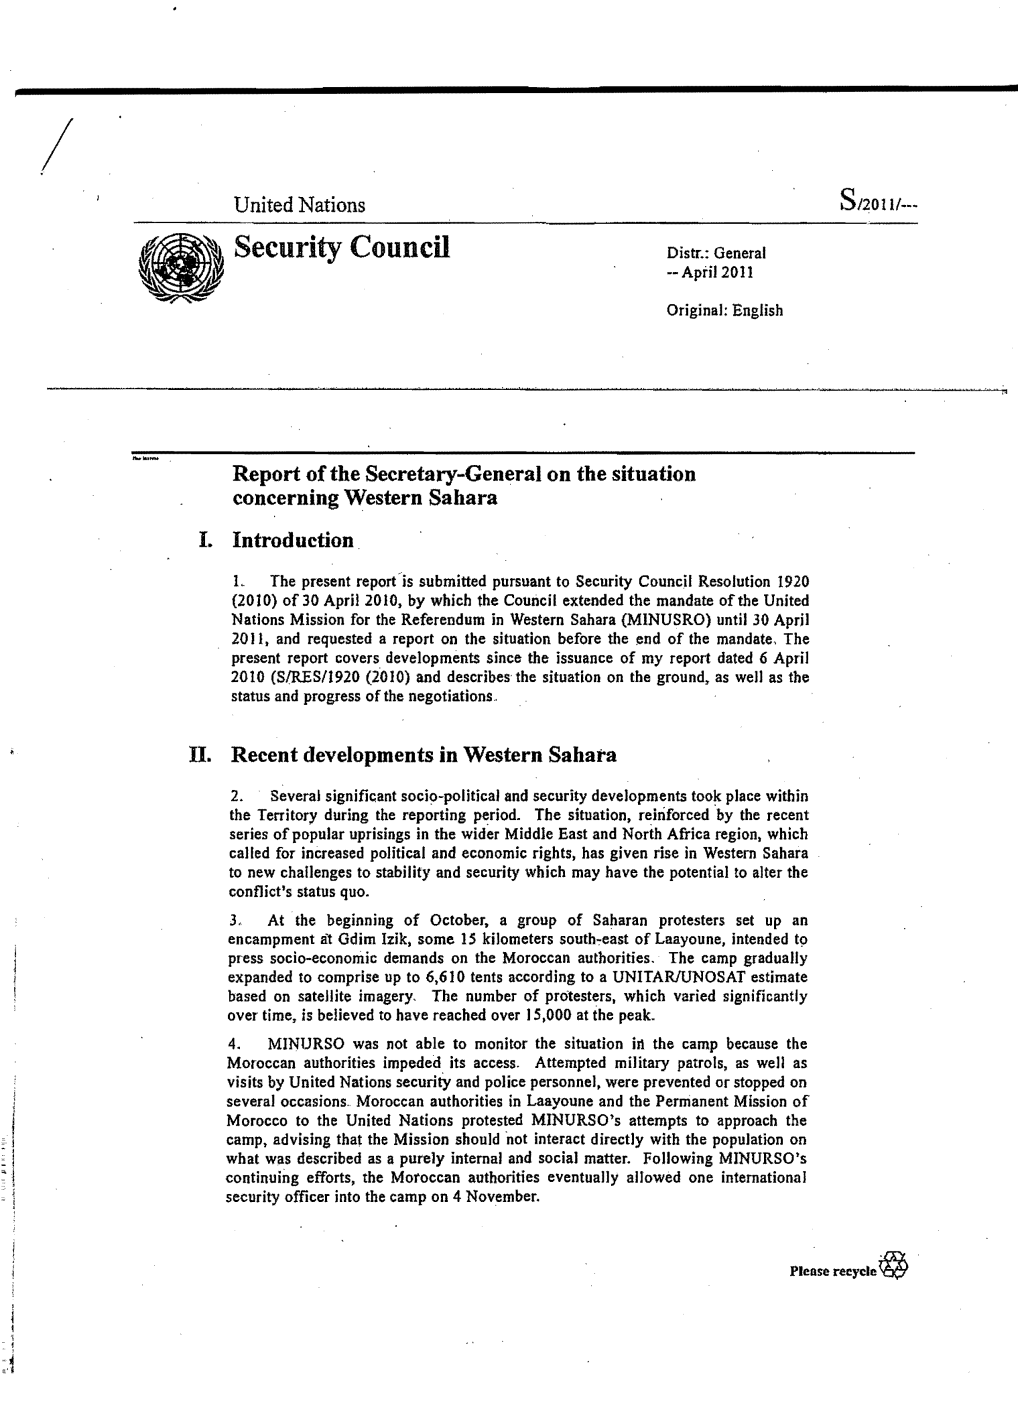 Security Council Distr.: General --Apfil2011